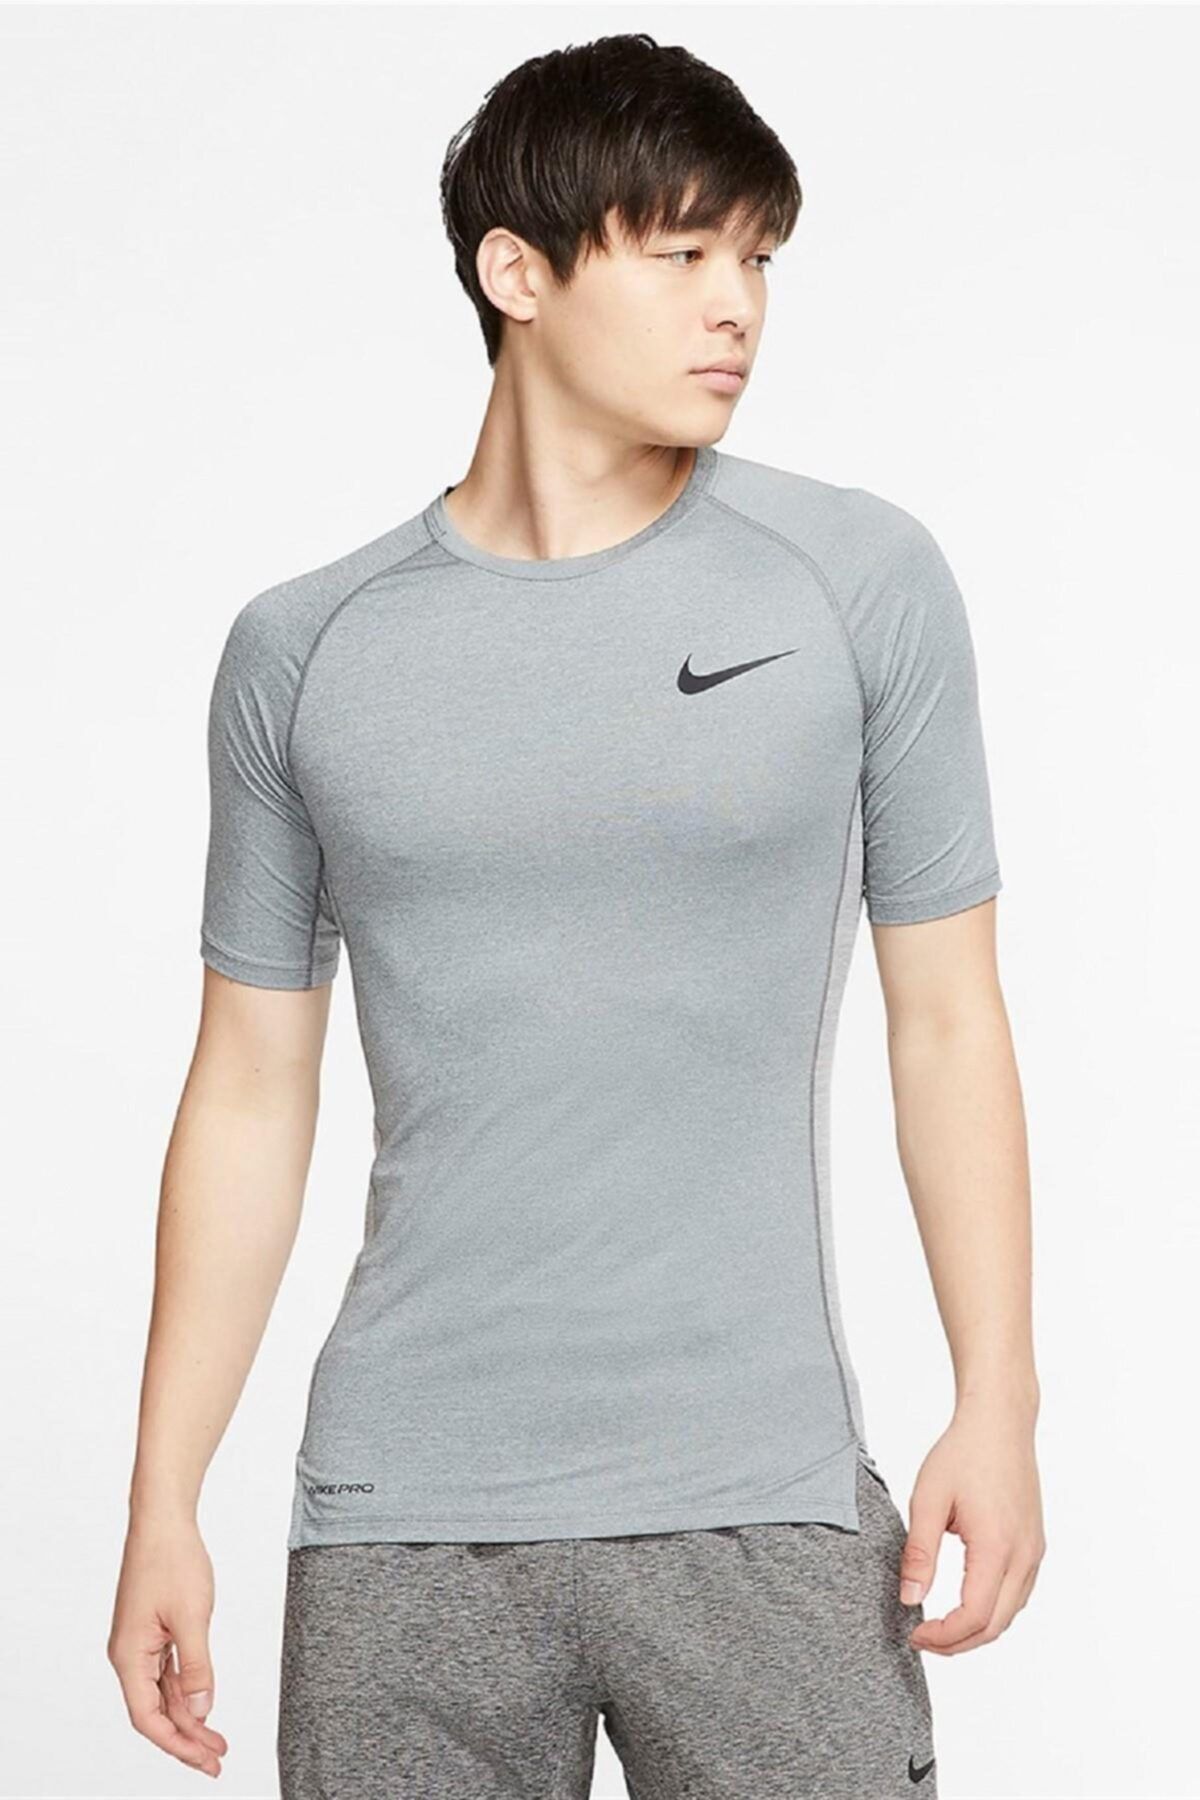 Nike Pro Compression Long Sleve T-shirt Sıkı Erkek Tişörtü Body